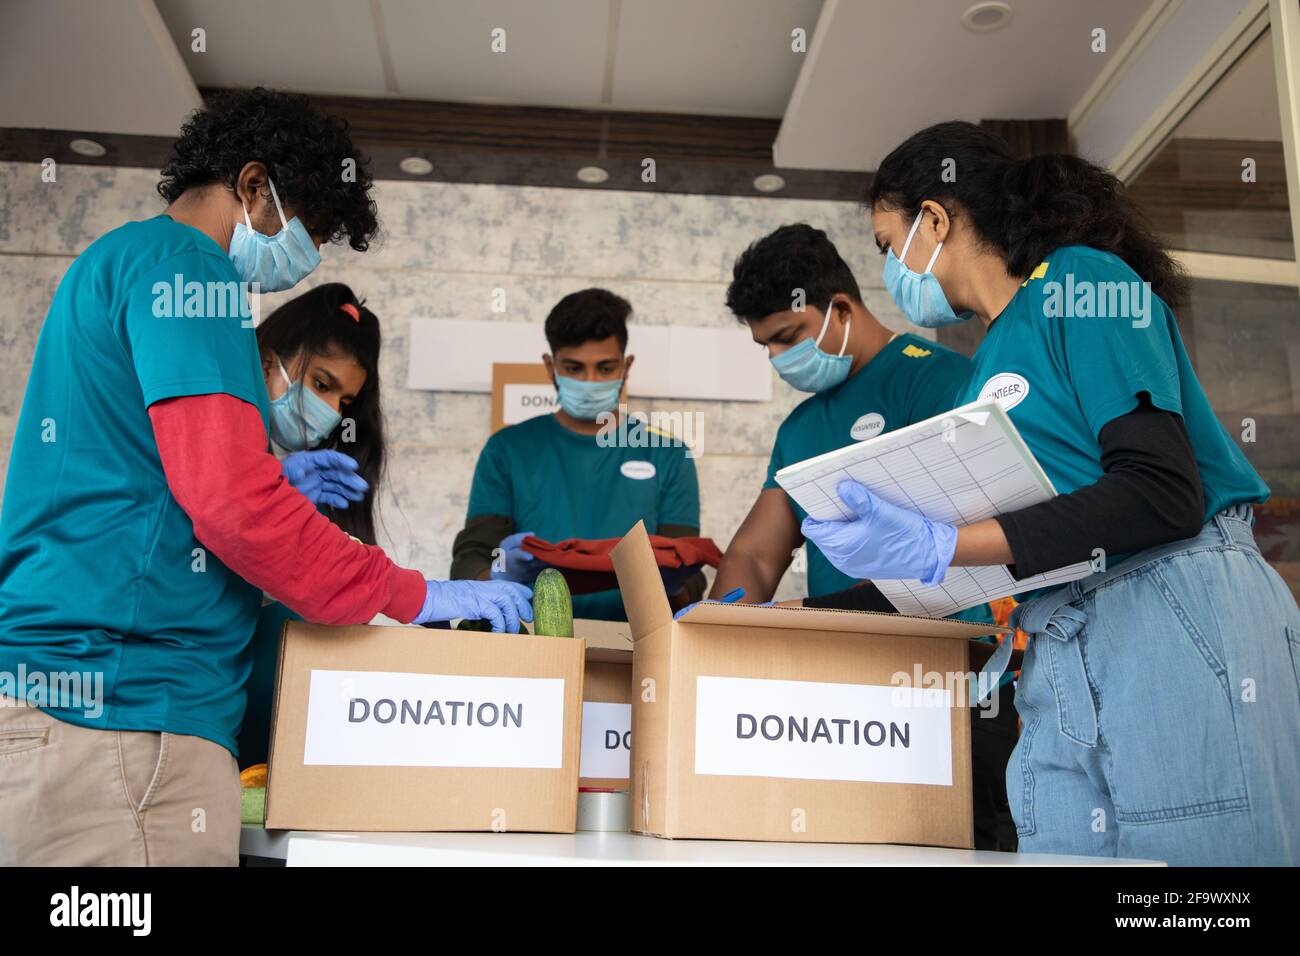 Vista ad angolo basso, gruppo di volontari impegnati a lavorare organizzando verdure e vestiti su scatole di donazione e annotando durante il Coronavirus covid-19 Foto Stock